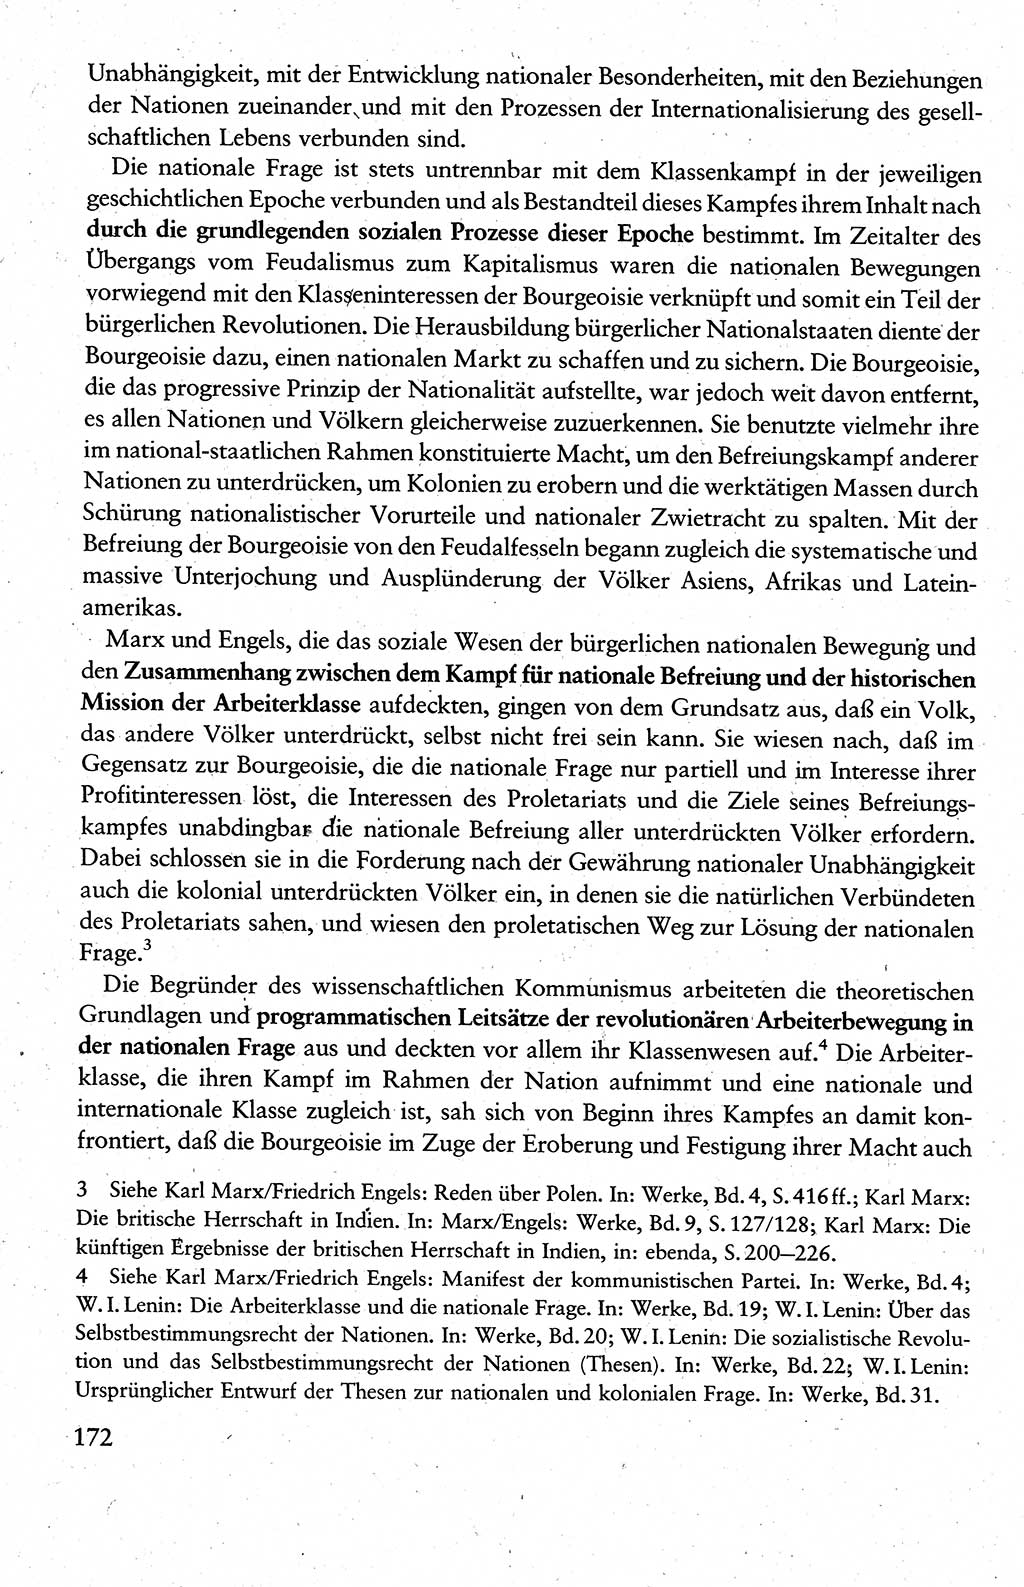 Wissenschaftlicher Kommunismus [Deutsche Demokratische Republik (DDR)], Lehrbuch für das marxistisch-leninistische Grundlagenstudium 1983, Seite 172 (Wiss. Komm. DDR Lb. 1983, S. 172)